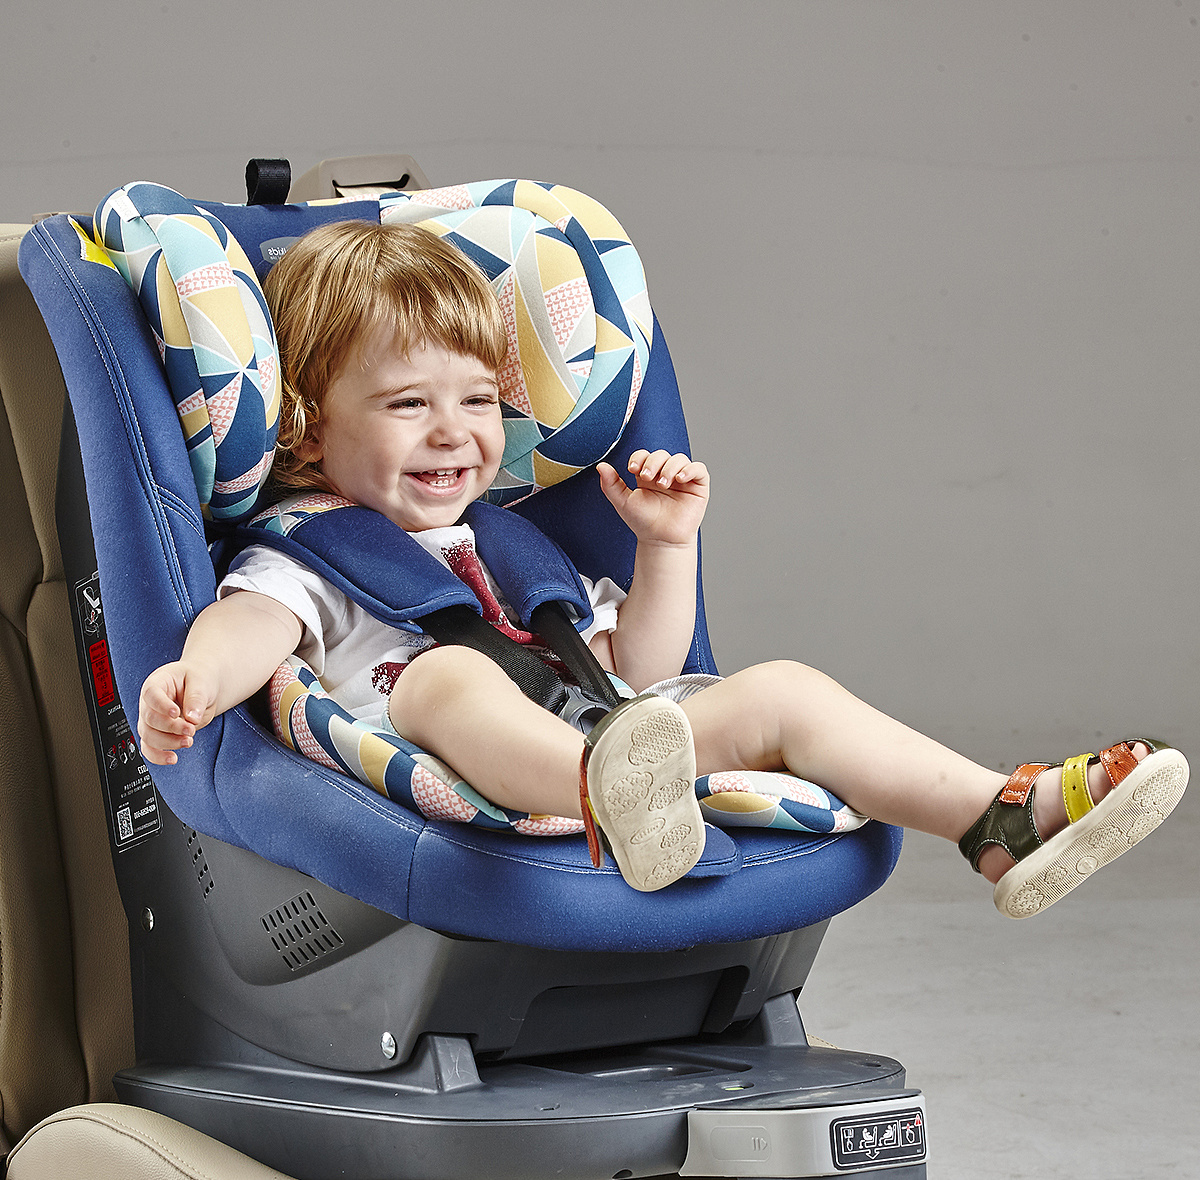 艾宝安全座椅汽车儿童安全座椅代理,样品编号:57331_婴童品牌网